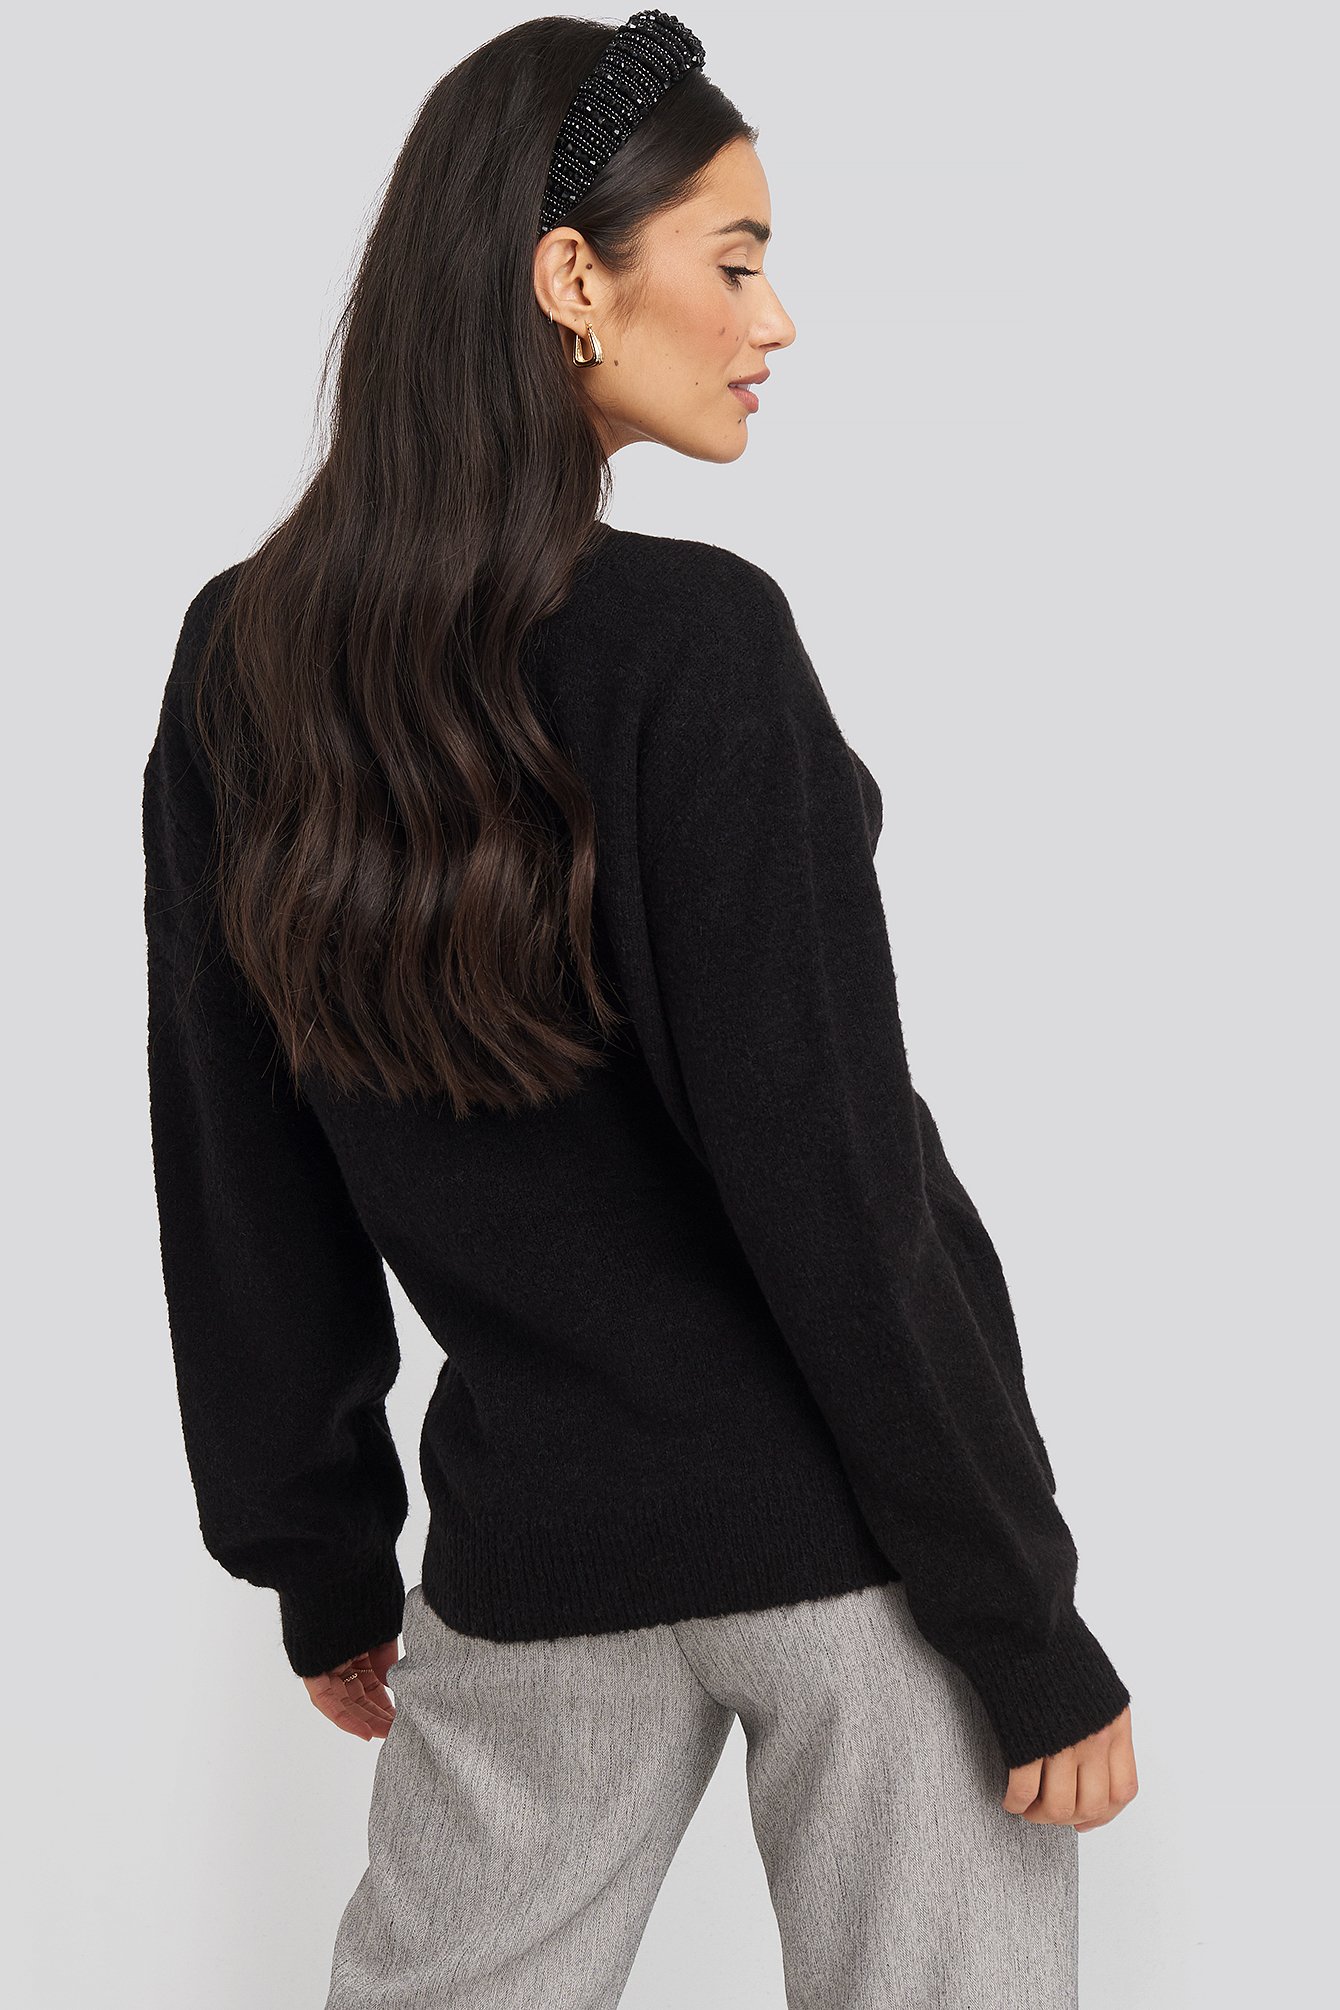 Black V-Neck Overlap Knitted Sweater